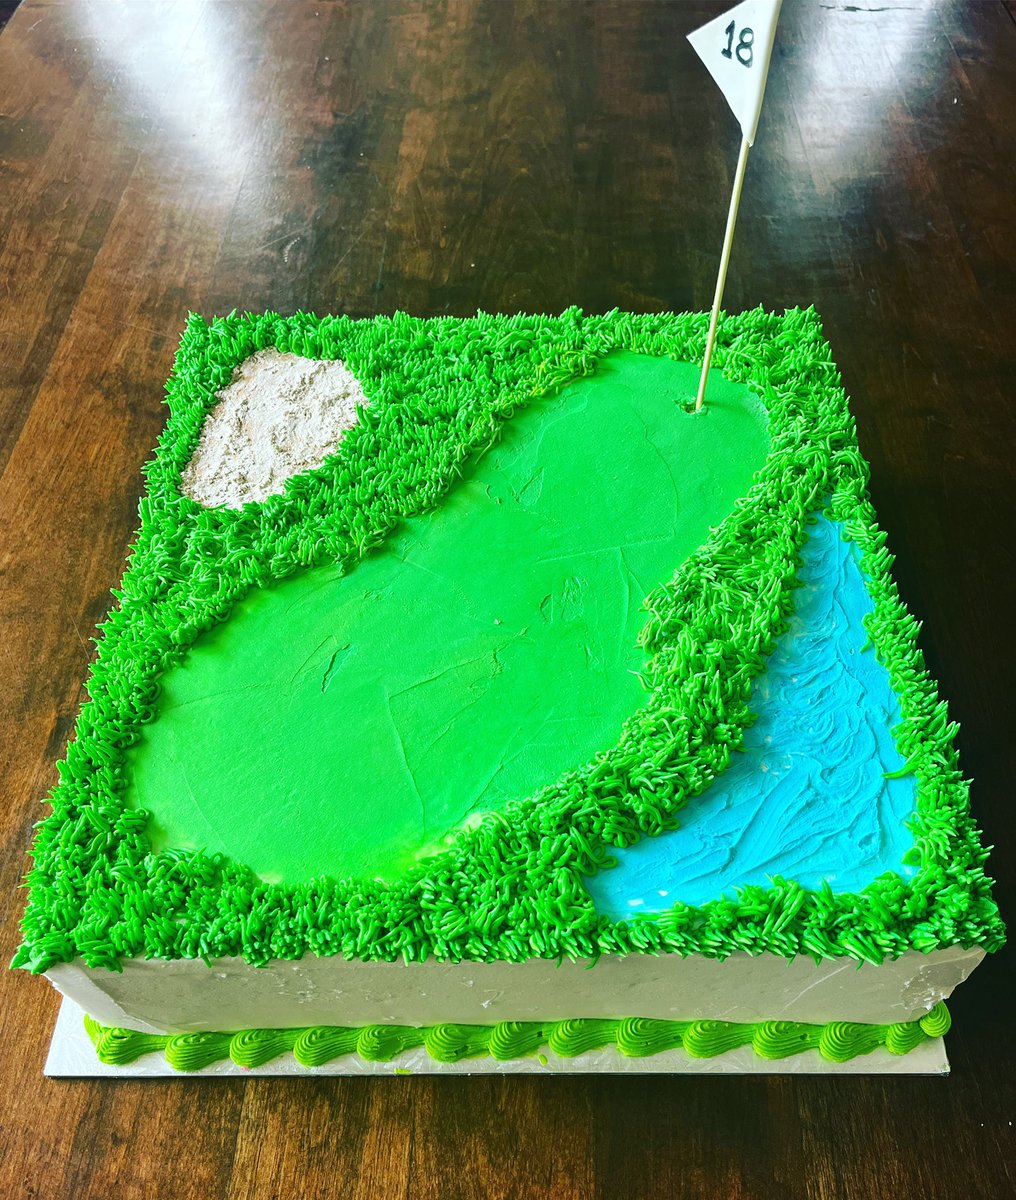 #birthdaycelebration #cakes #cakeart #cakedecoration #cakedesign #buttericing #fondanticing #xoliscakes